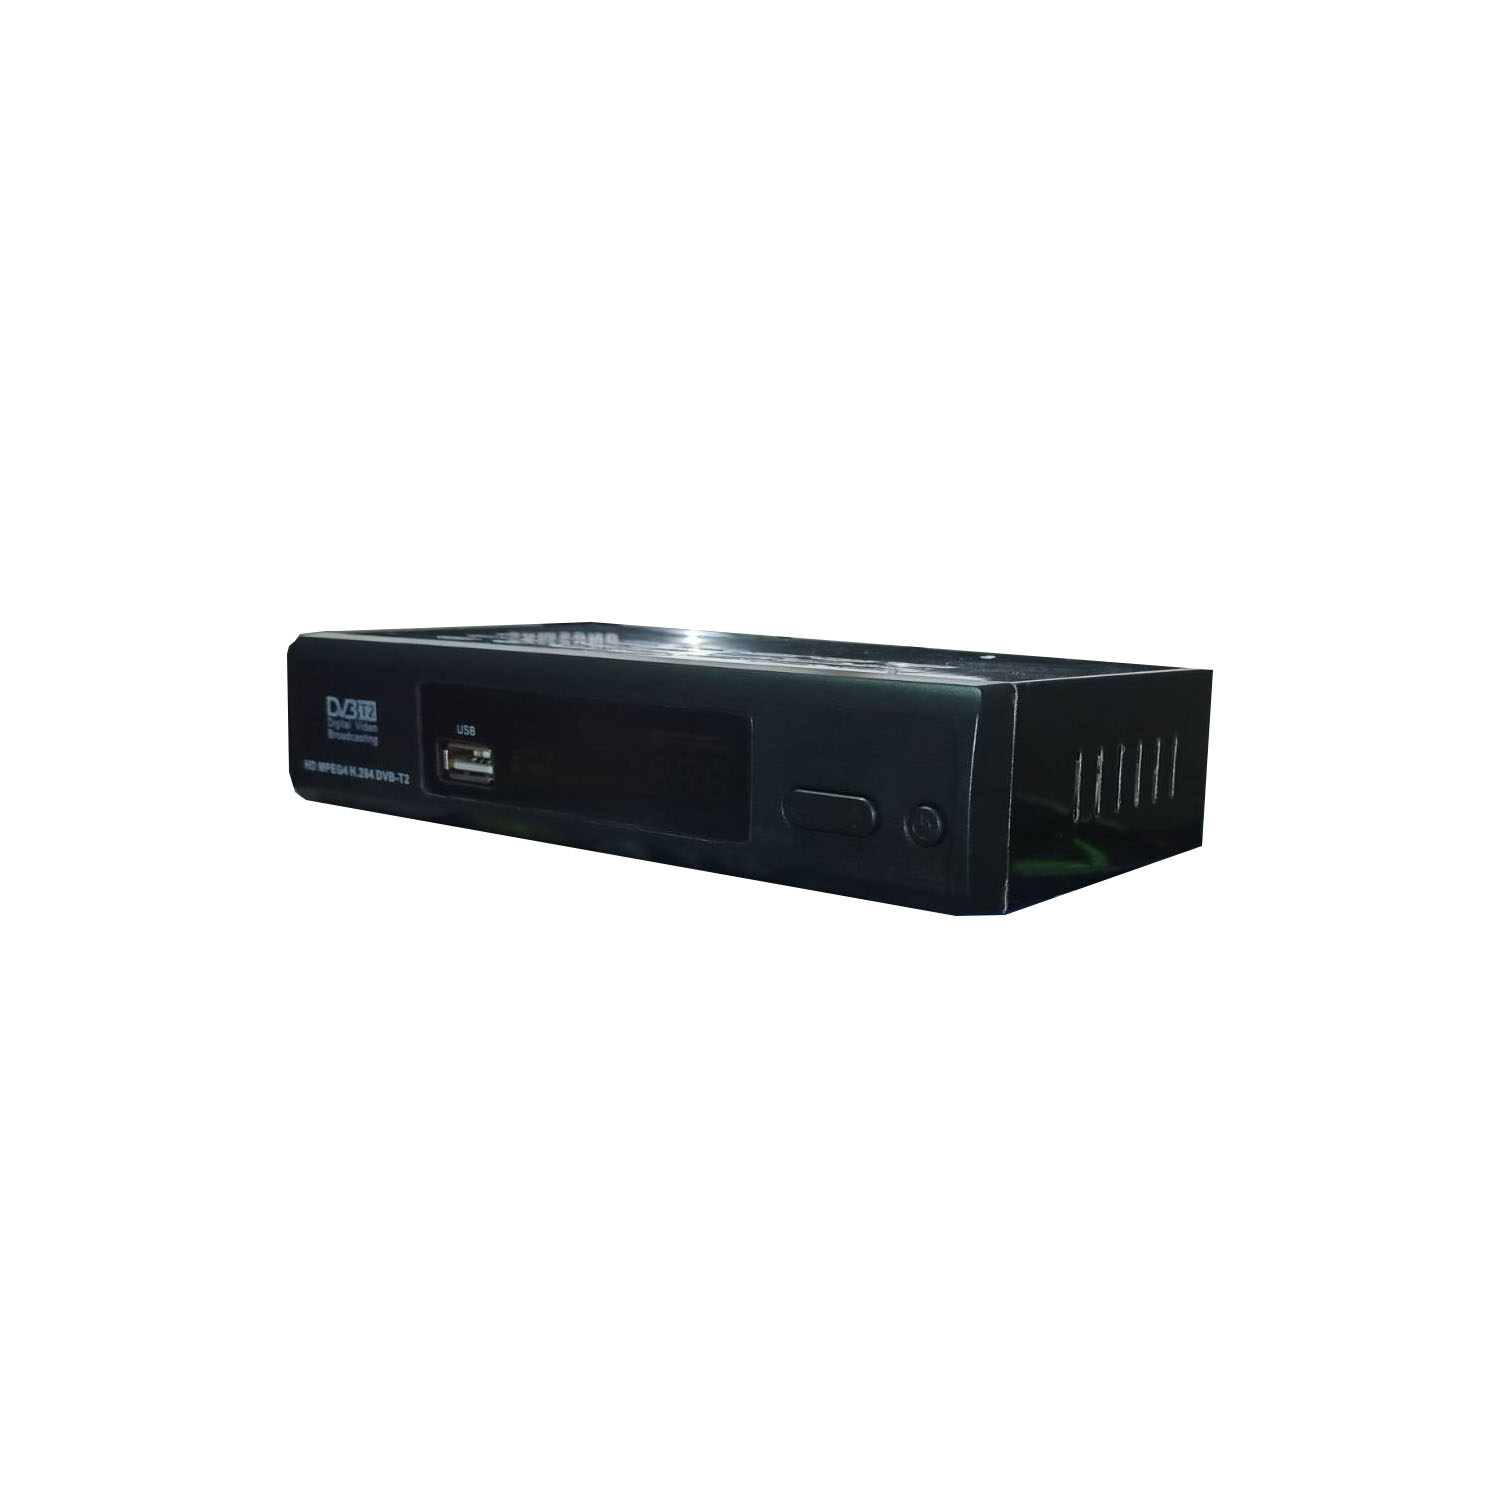 ภาพประกอบของ กล่องดิจิตอลทีวี DigitalTV HDTV HD BOX ใช้ร่วมกับเสาอากาศทีวี คมชัดด้วยระบบดิจิตอล สินค้าคุณภาพ สินค้าพร้อมส่ง